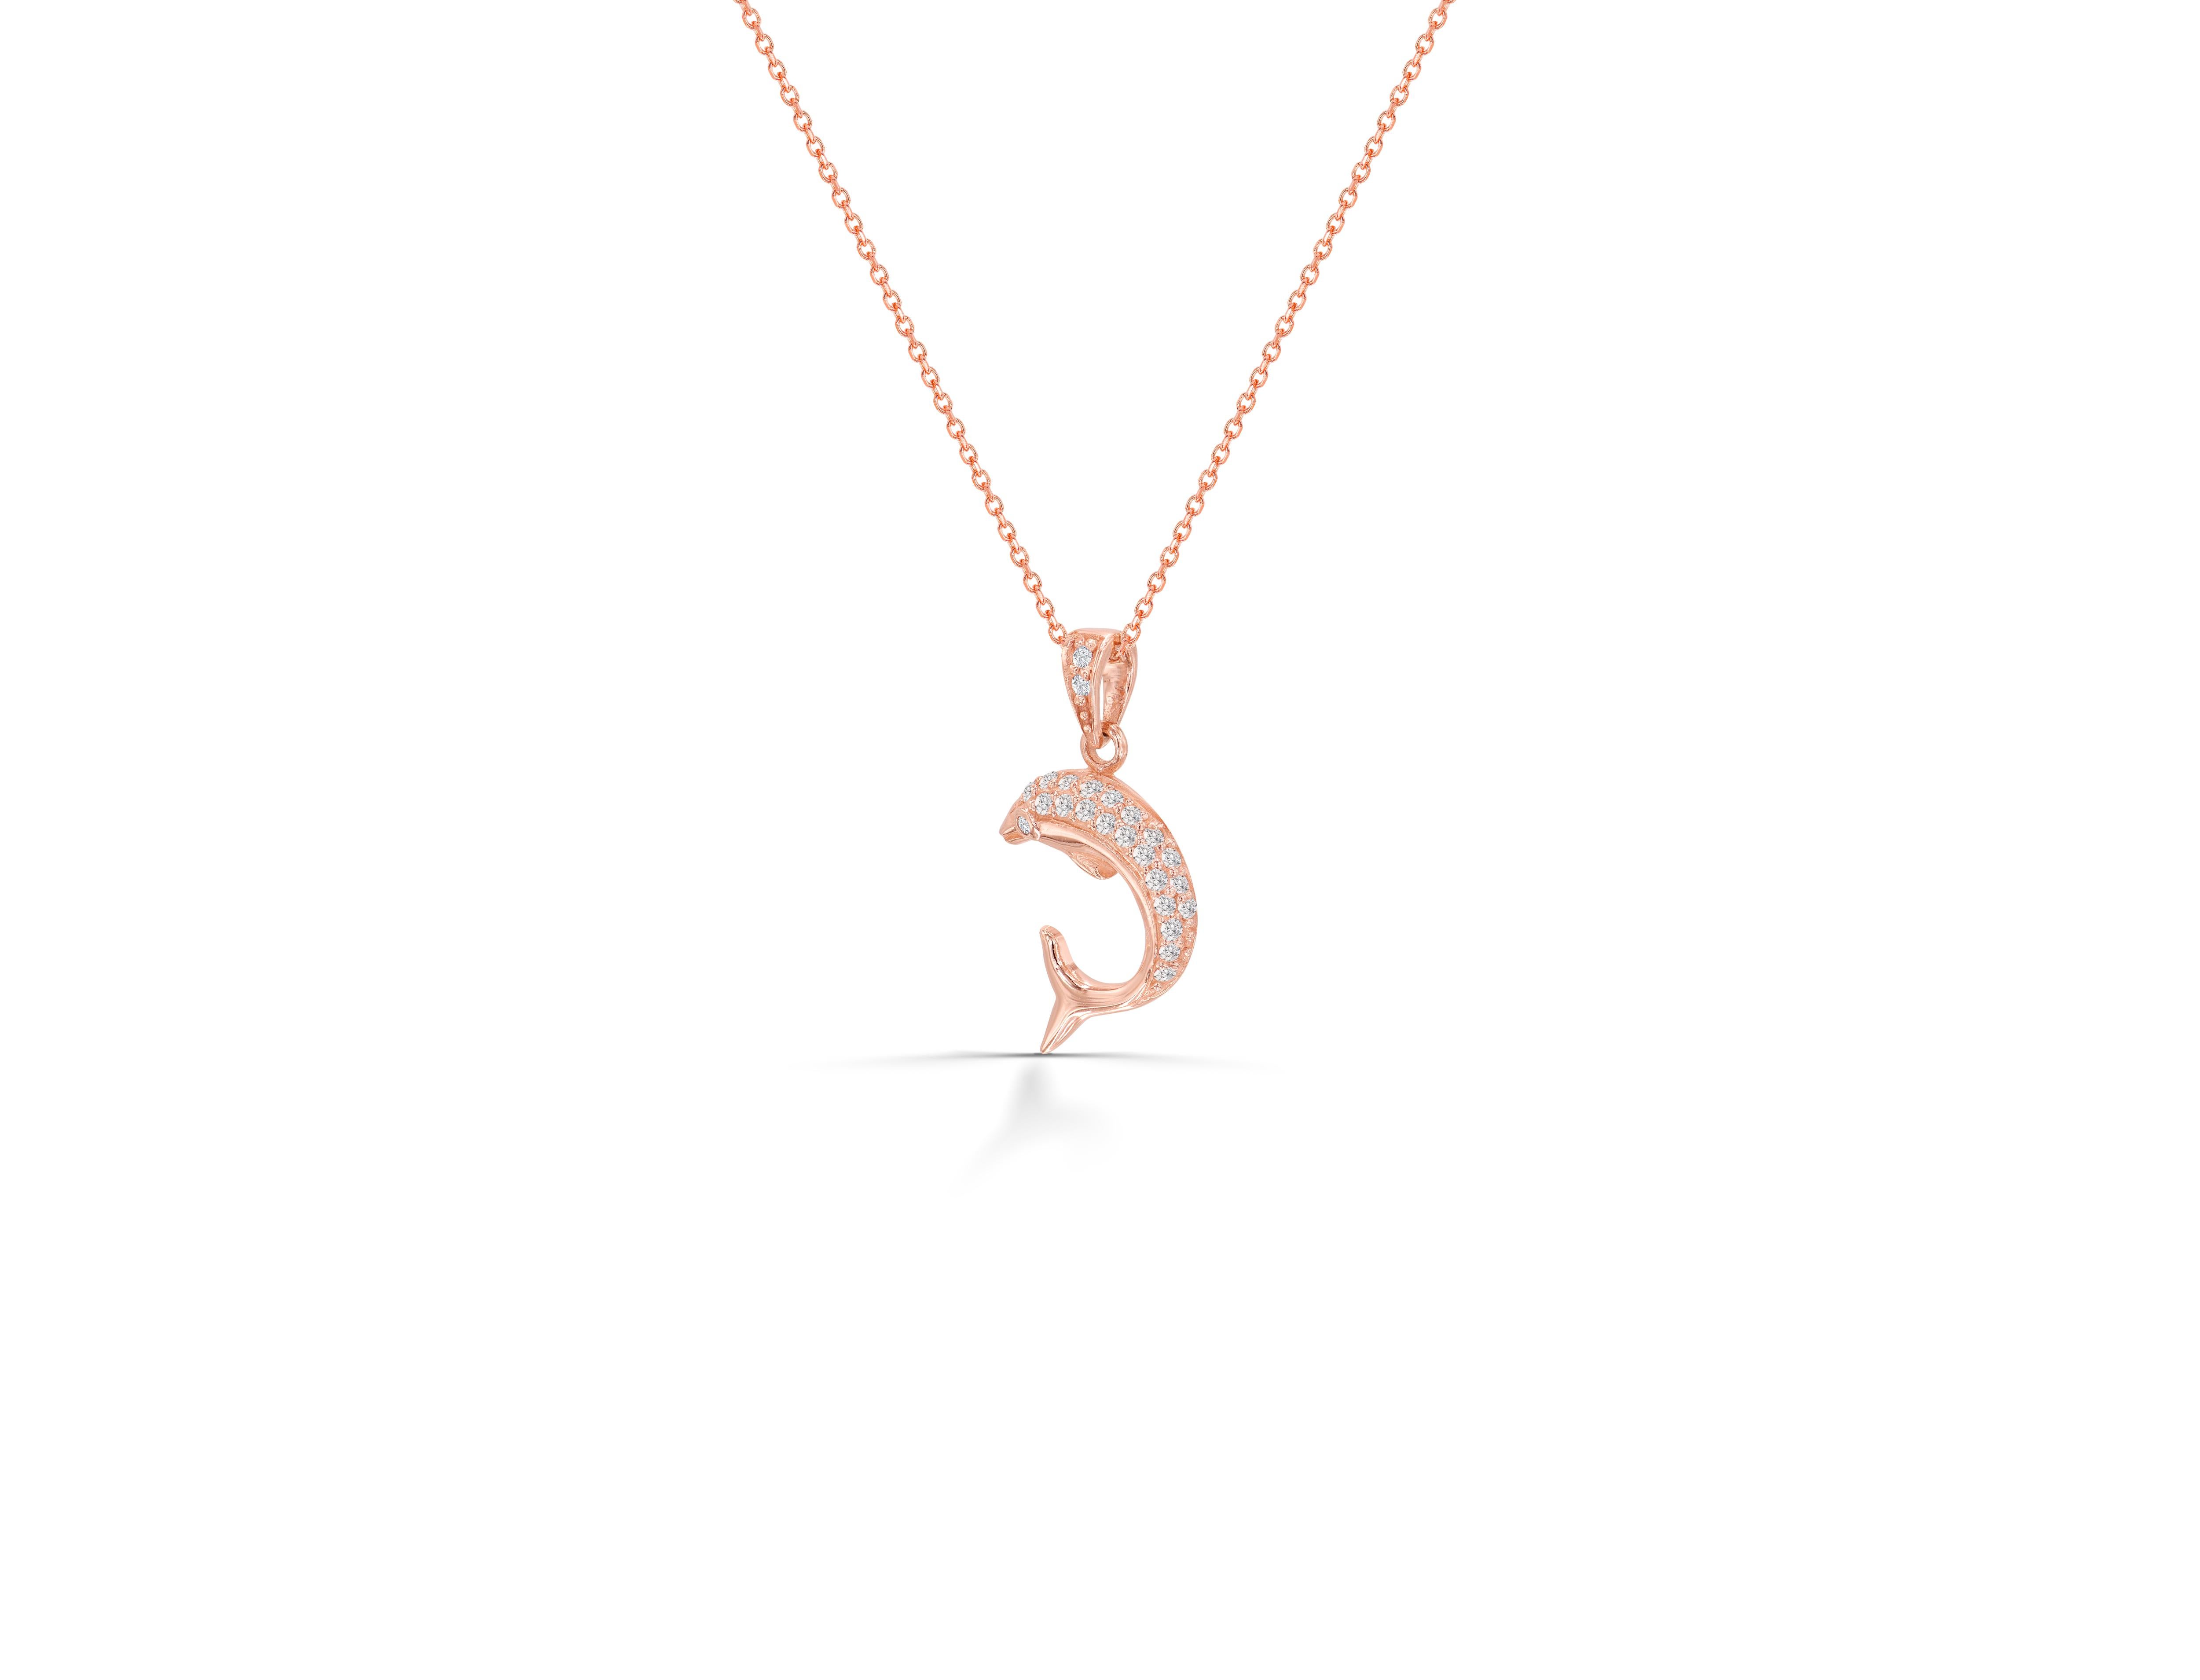 Die zarte Delphin-Charm-Halskette mit einem natürlichen Diamanten ist aus massivem 14-karätigem Gold gefertigt.
Erhältlich in drei Goldfarben:  Weißgold / Rose  Gold / Gelbgold.

Leichter und wunderschöner echter Diamant im Rundschliff. Jeder